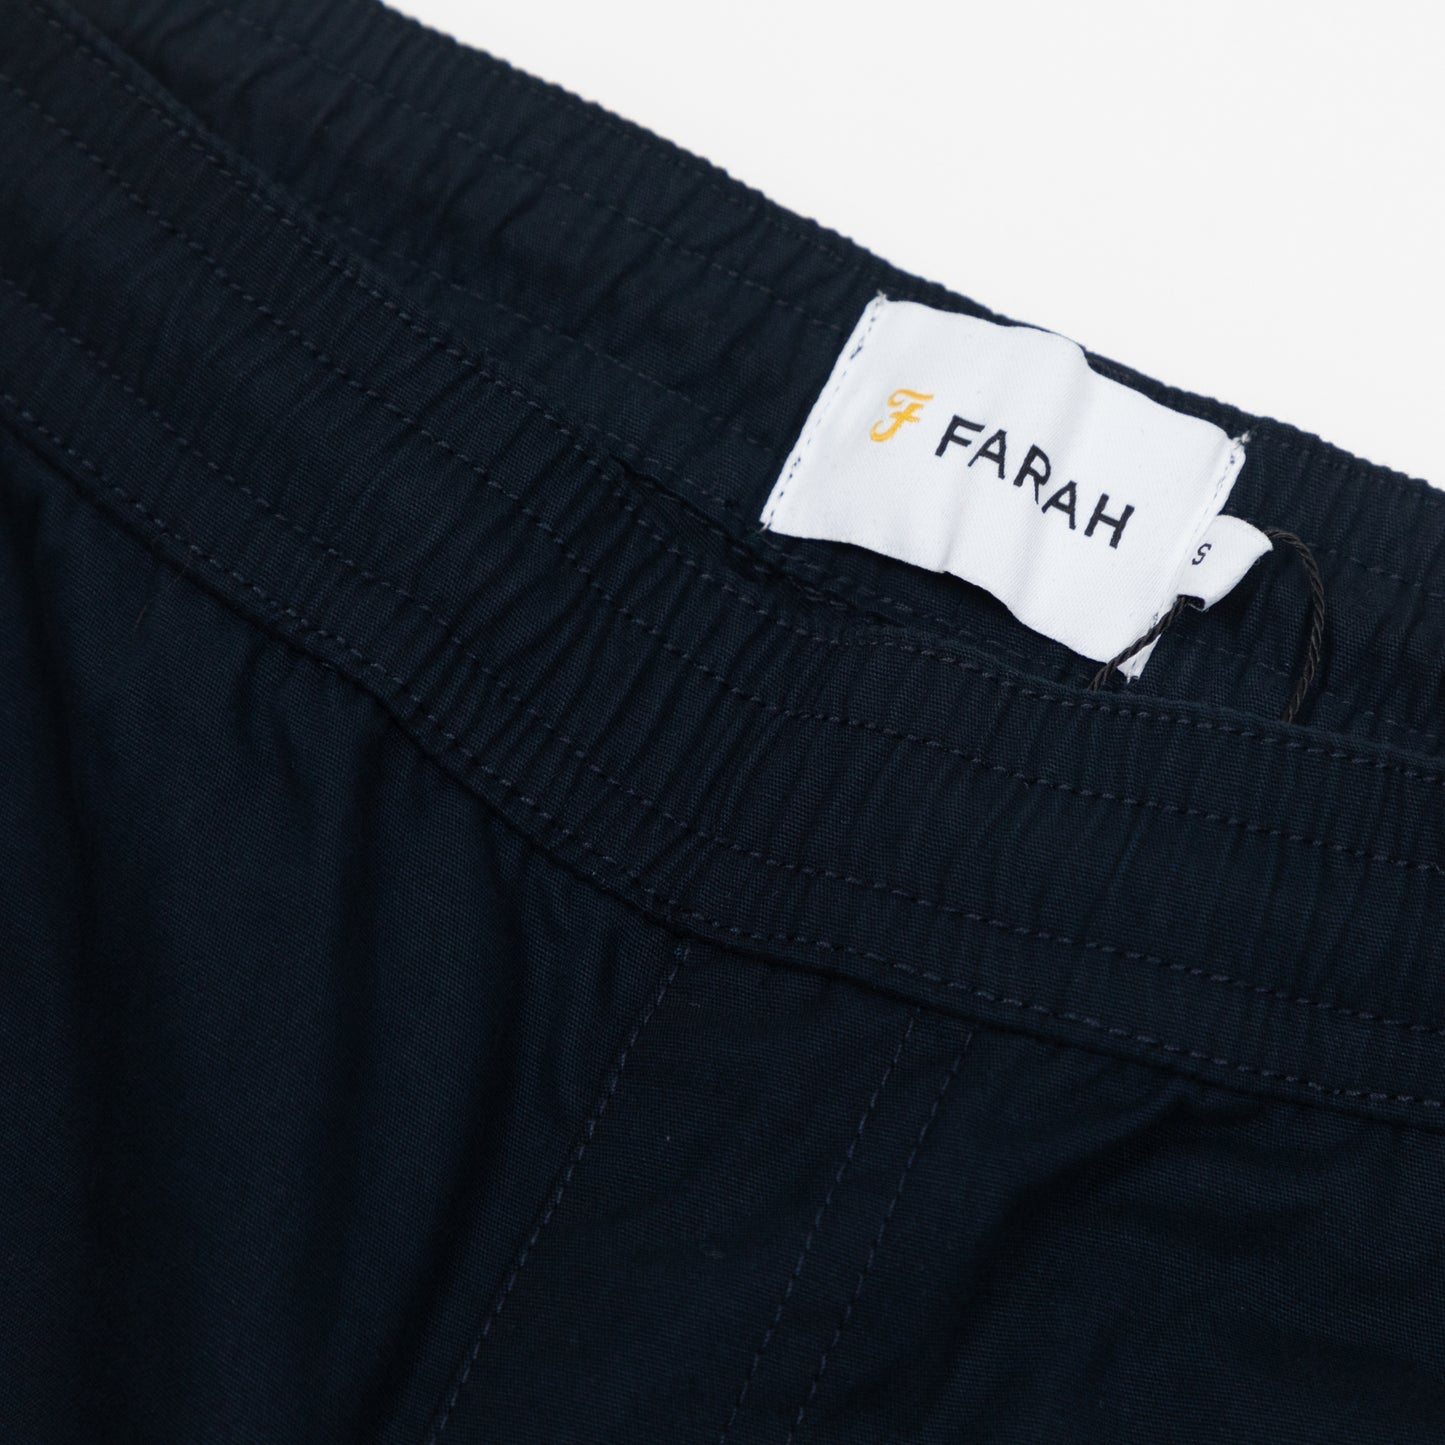 FARAH Rushmore Chino Trousers in TRUE NAVY